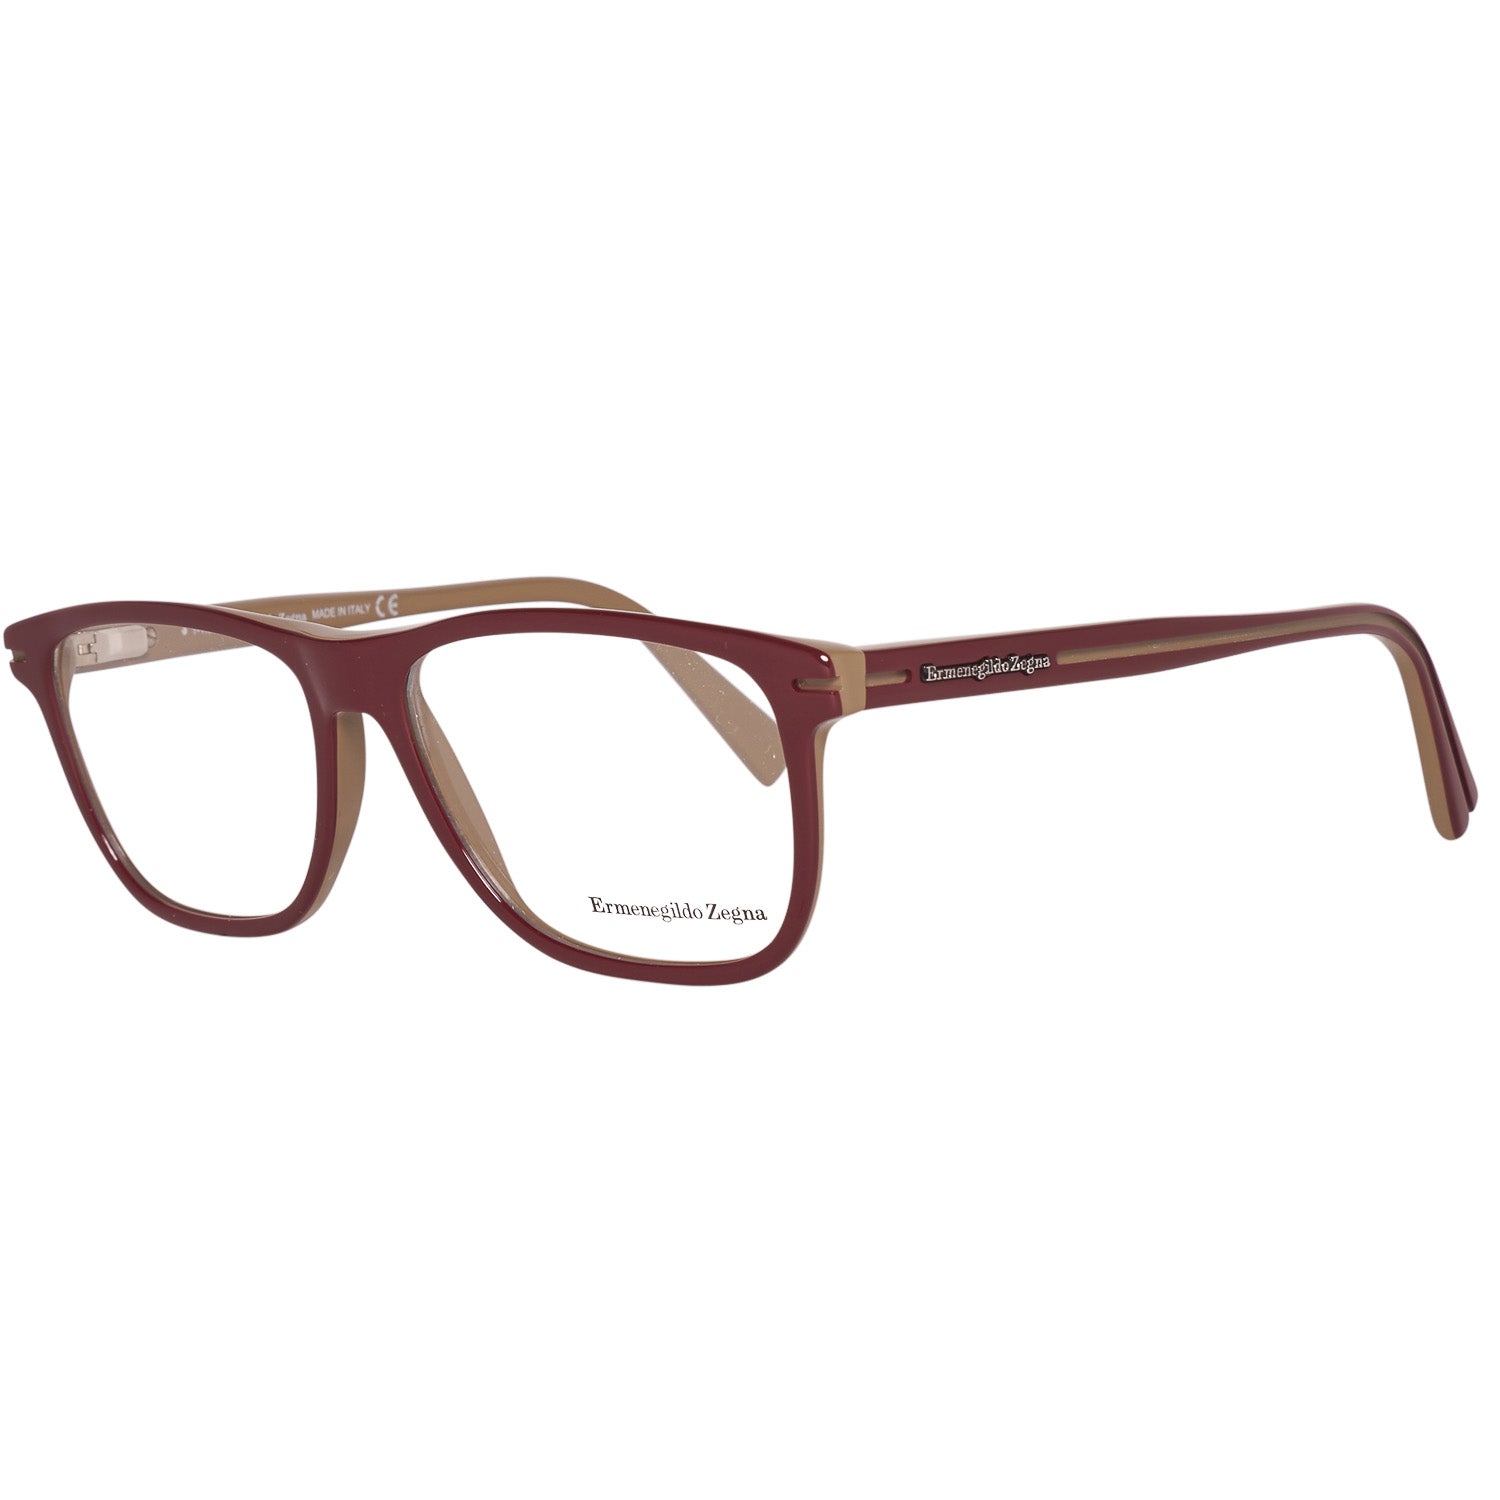 Ermenegildo Zegna Frames Ermenegildo Zegna Glasses Optical Frame EZ5044 071 55 Eyeglasses Eyewear UK USA Australia 